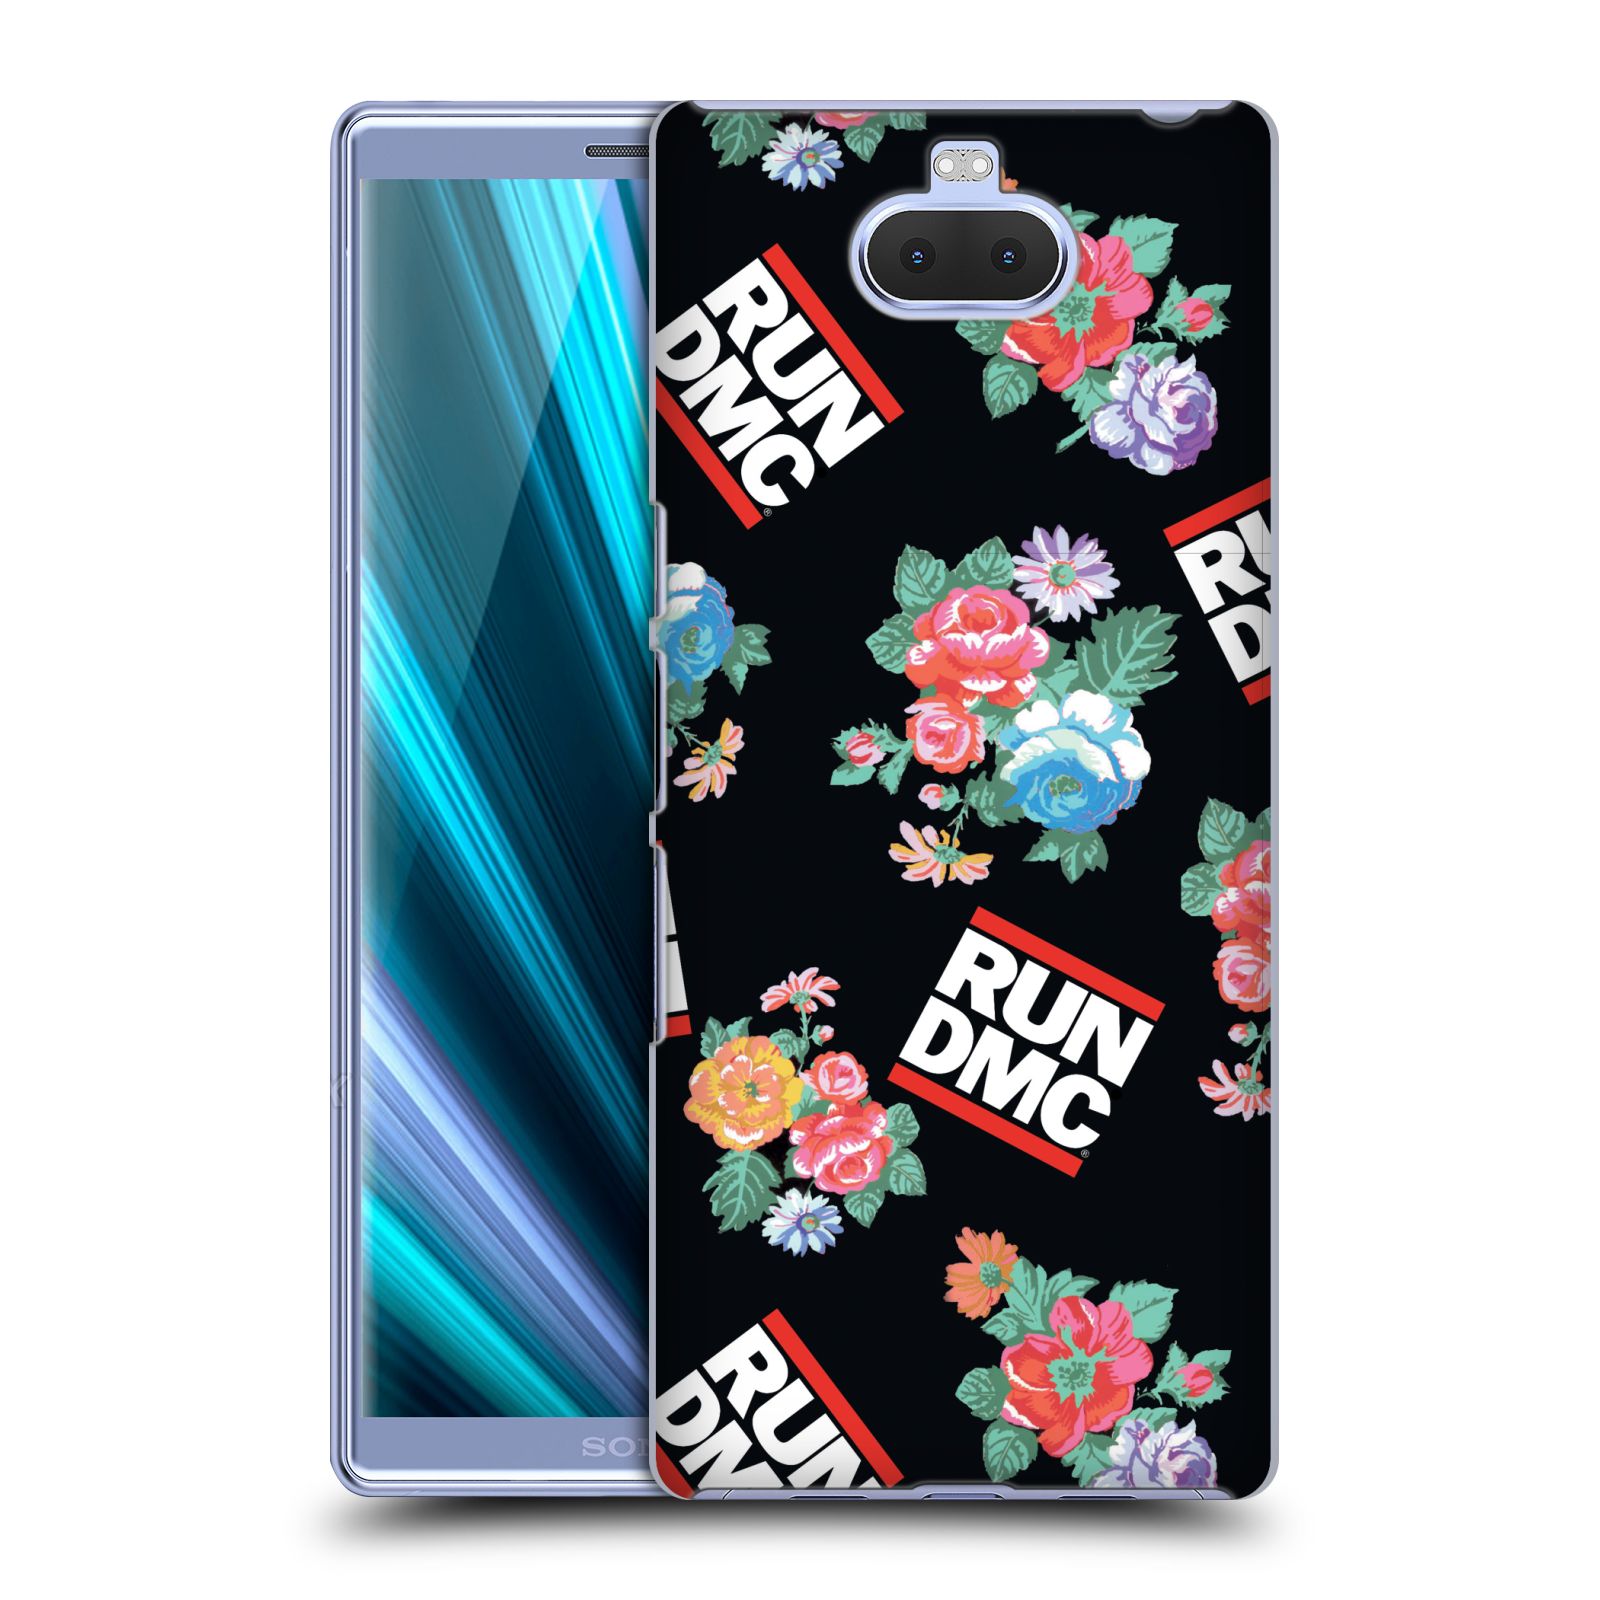 Pouzdro na mobil Sony Xperia 10 - Head Case - rapová kapela Run DMC květiny černé pozadí